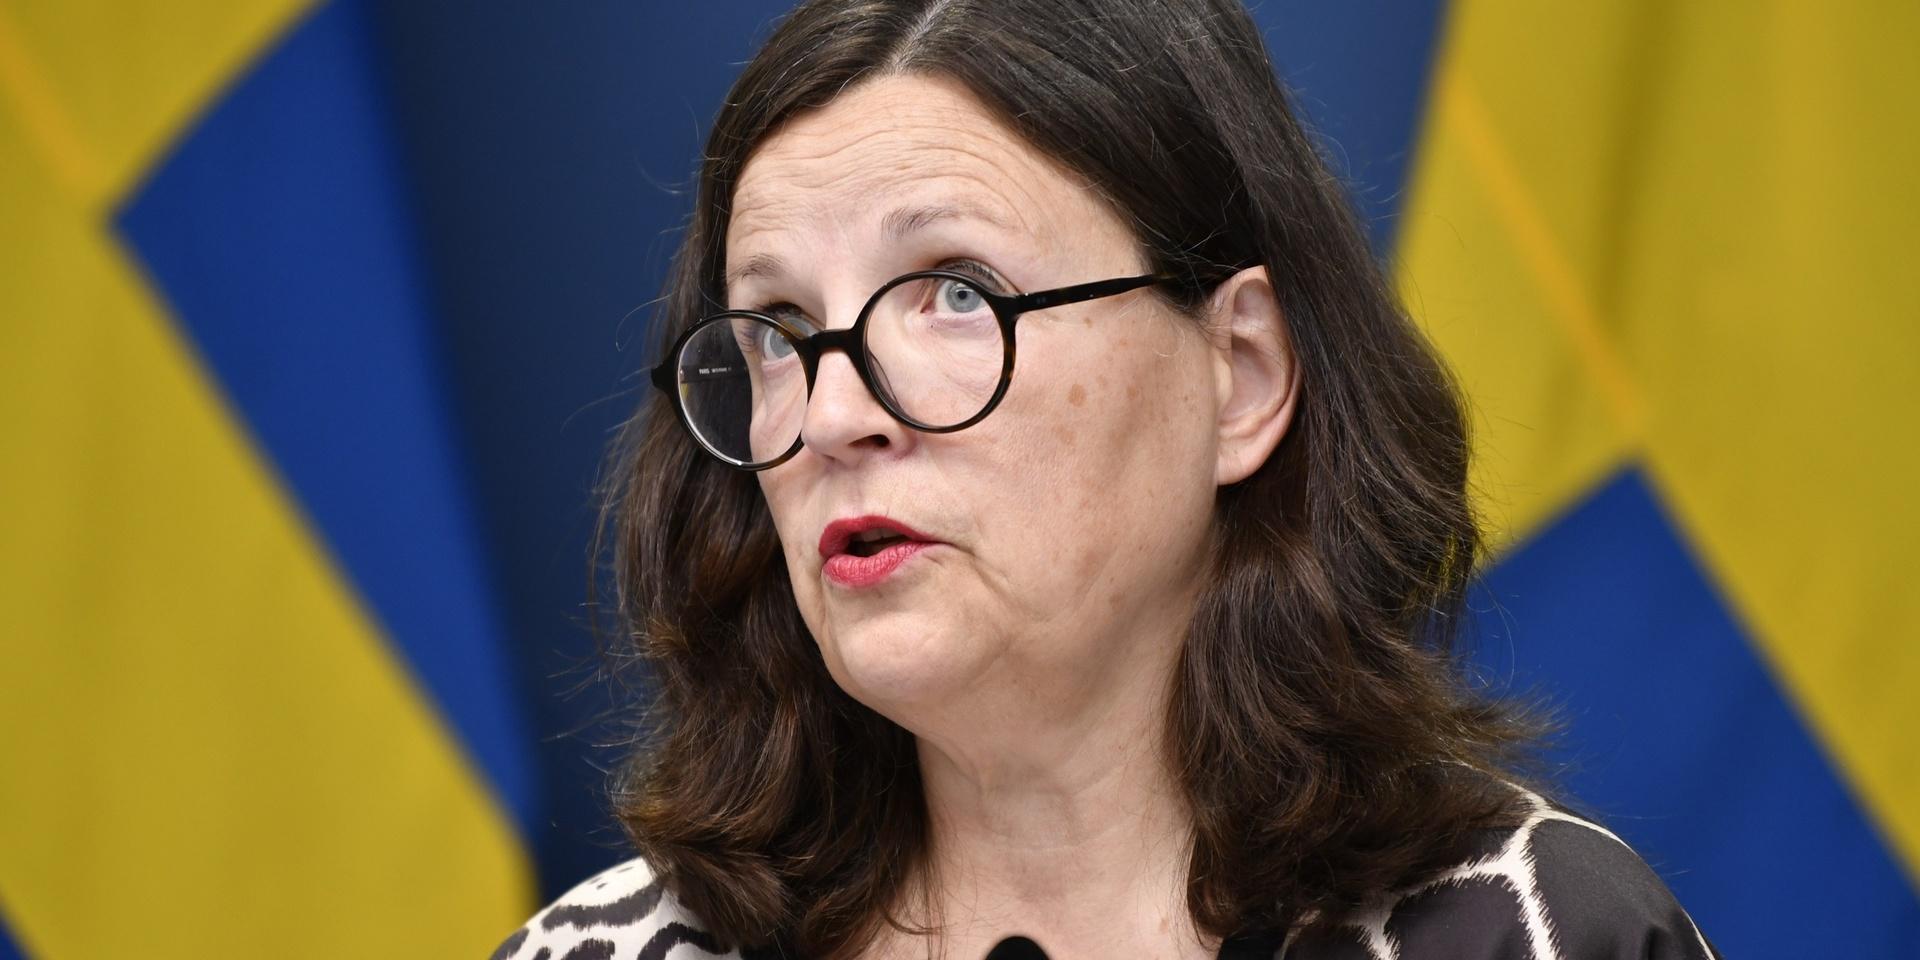 Utbildningsminister Anna Ekström (S) höll en pressträff för att presentera en lagrådsremiss med förslag som ska ge Skolinspektionen ökade möjligheter att stänga skolor med allvarliga brister.